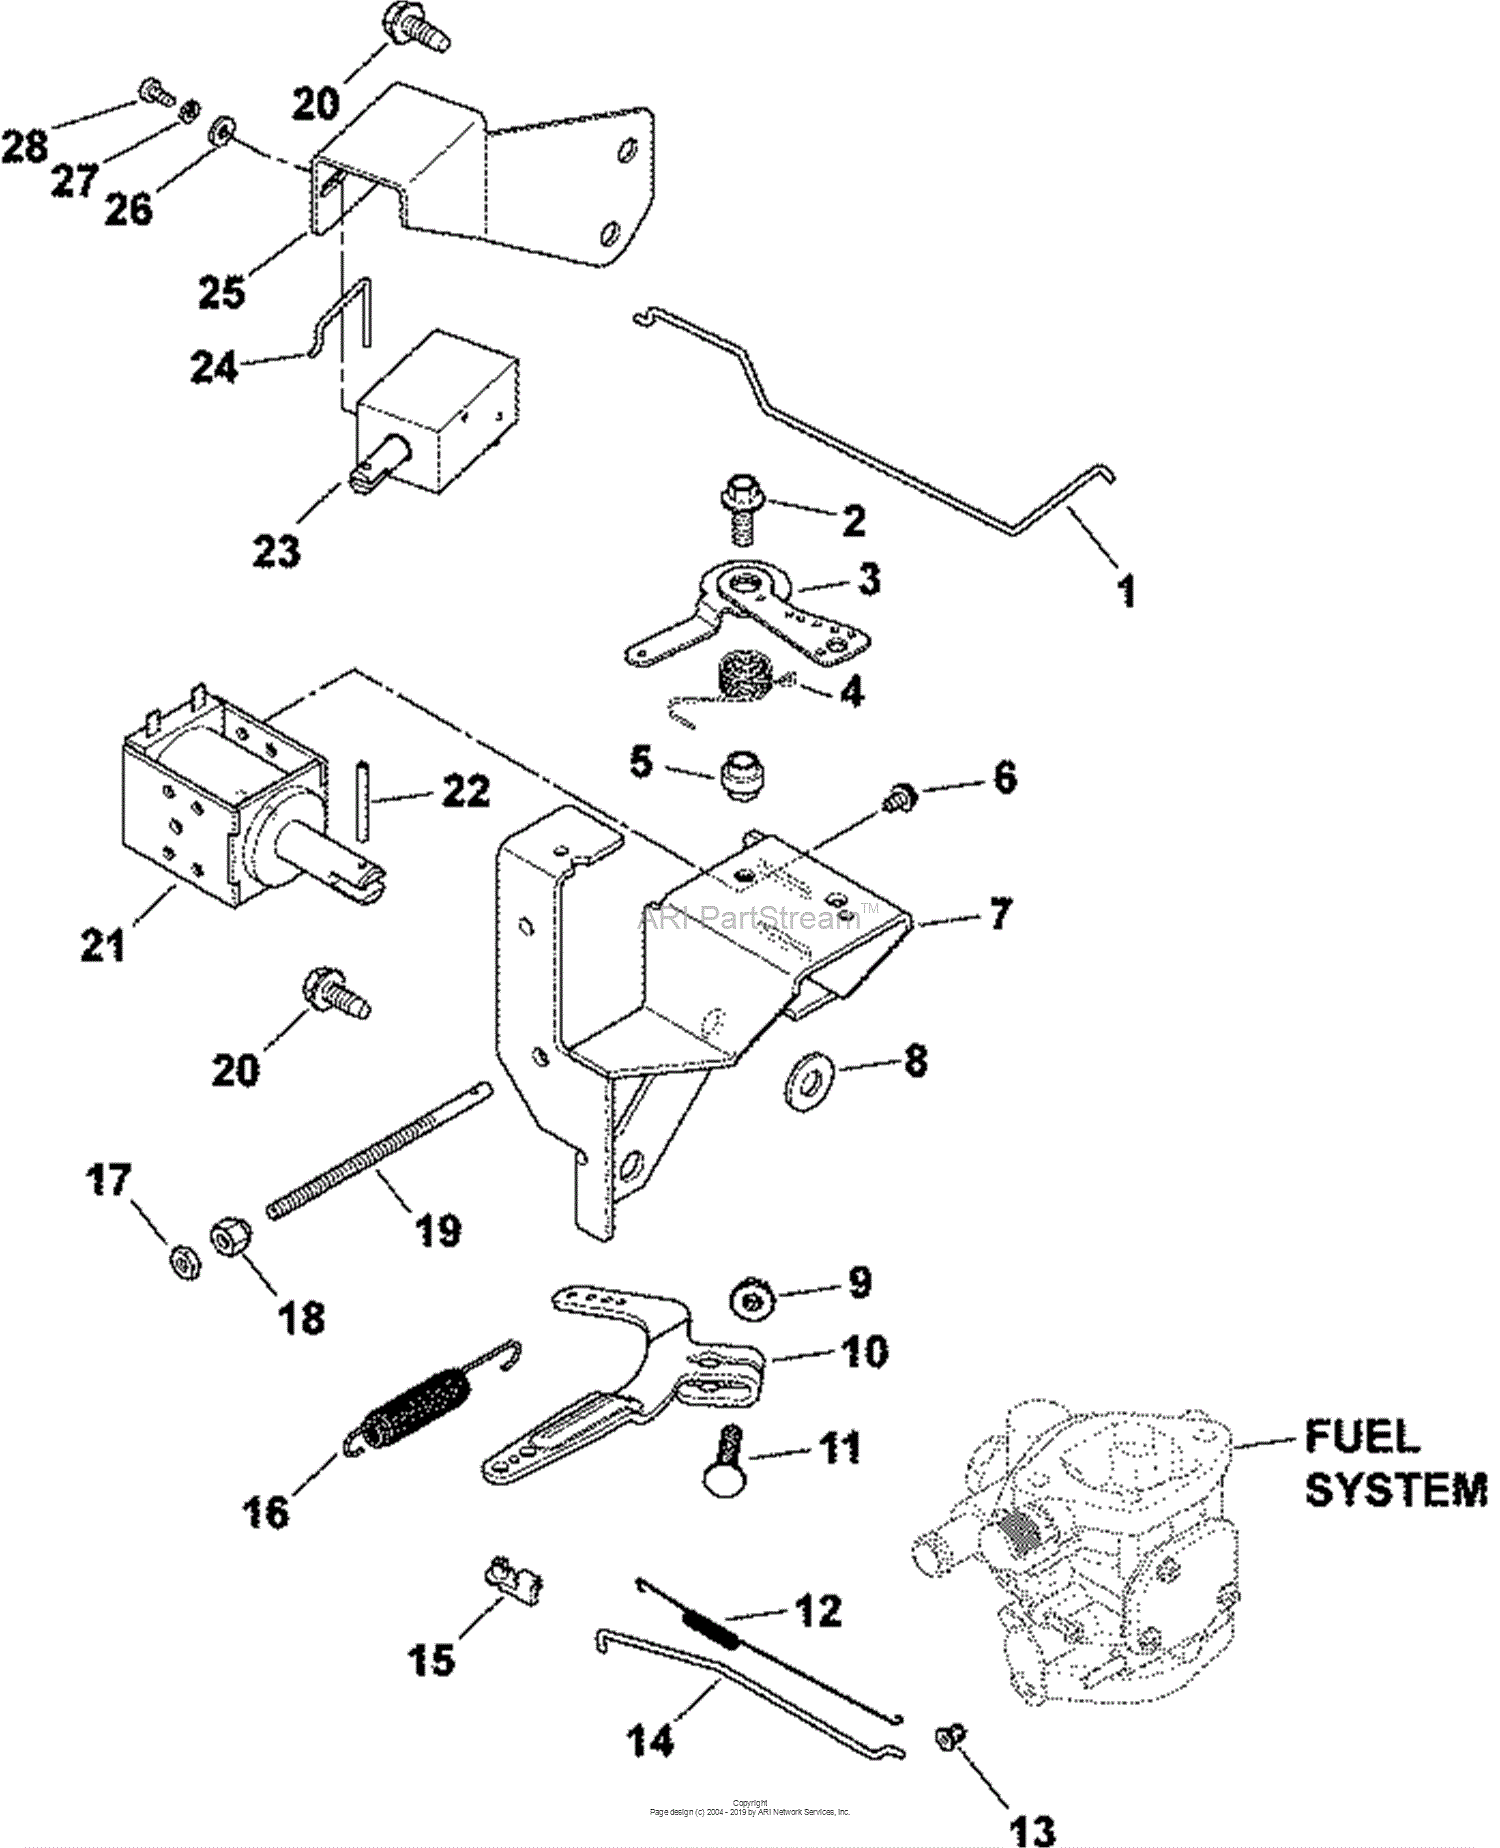 Kohler 20 Hp Carburetor Diagram 1